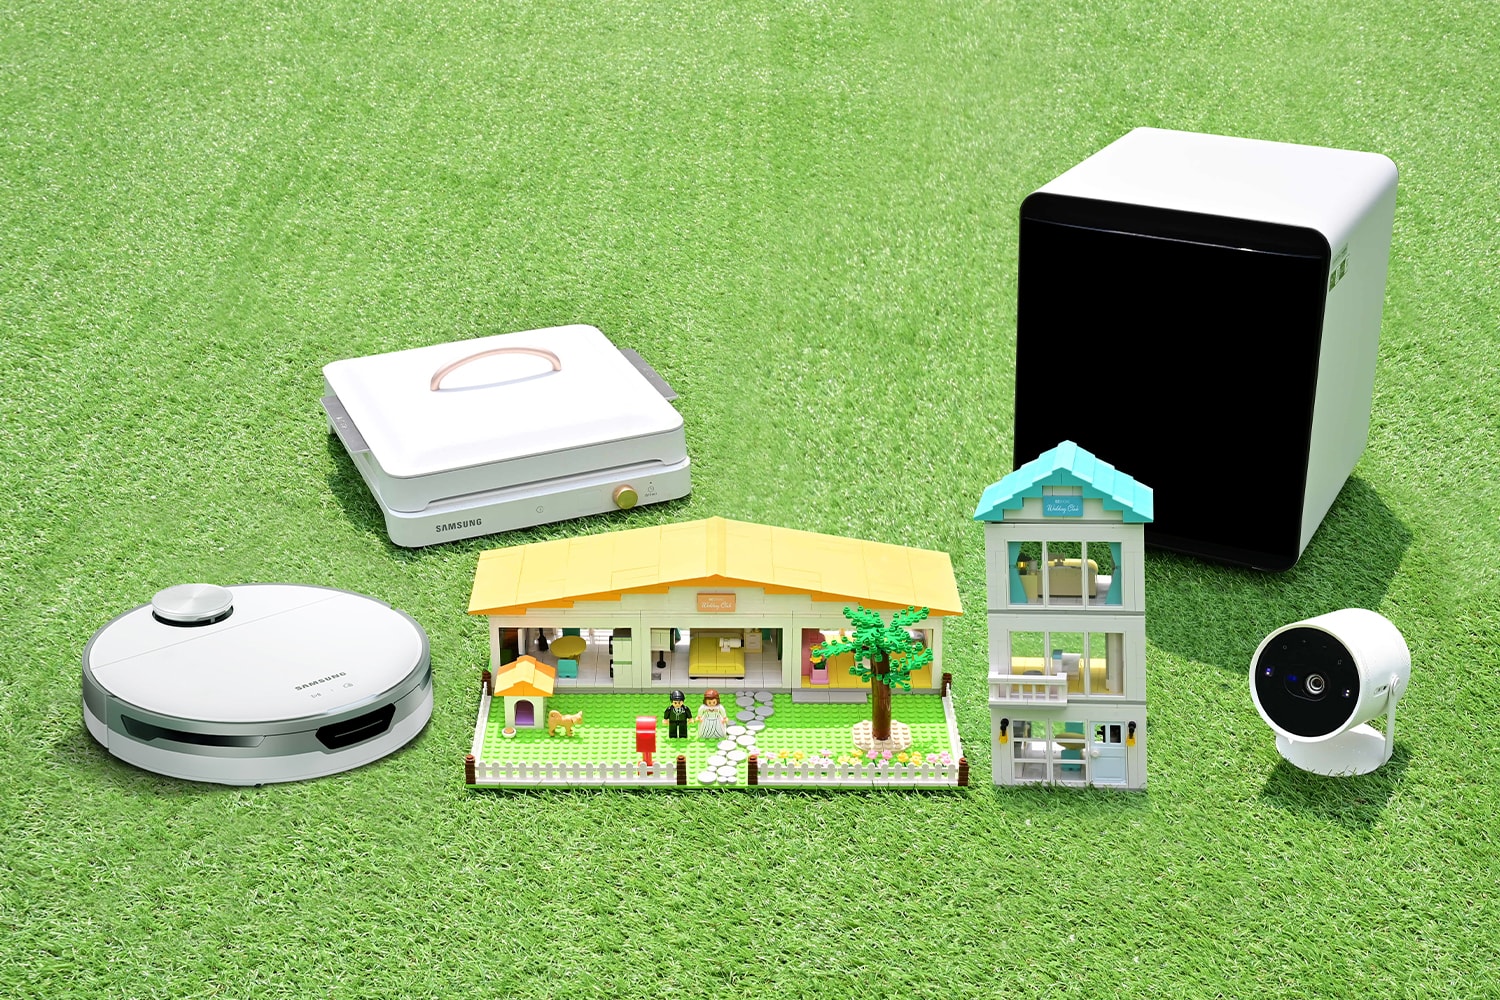 와디즈, 삼성전자와 옥스포드가 함께한 '신혼 가전 굿즈' 한정판 출시 samsung home appliances oxford toy limited edition goods release wadiz